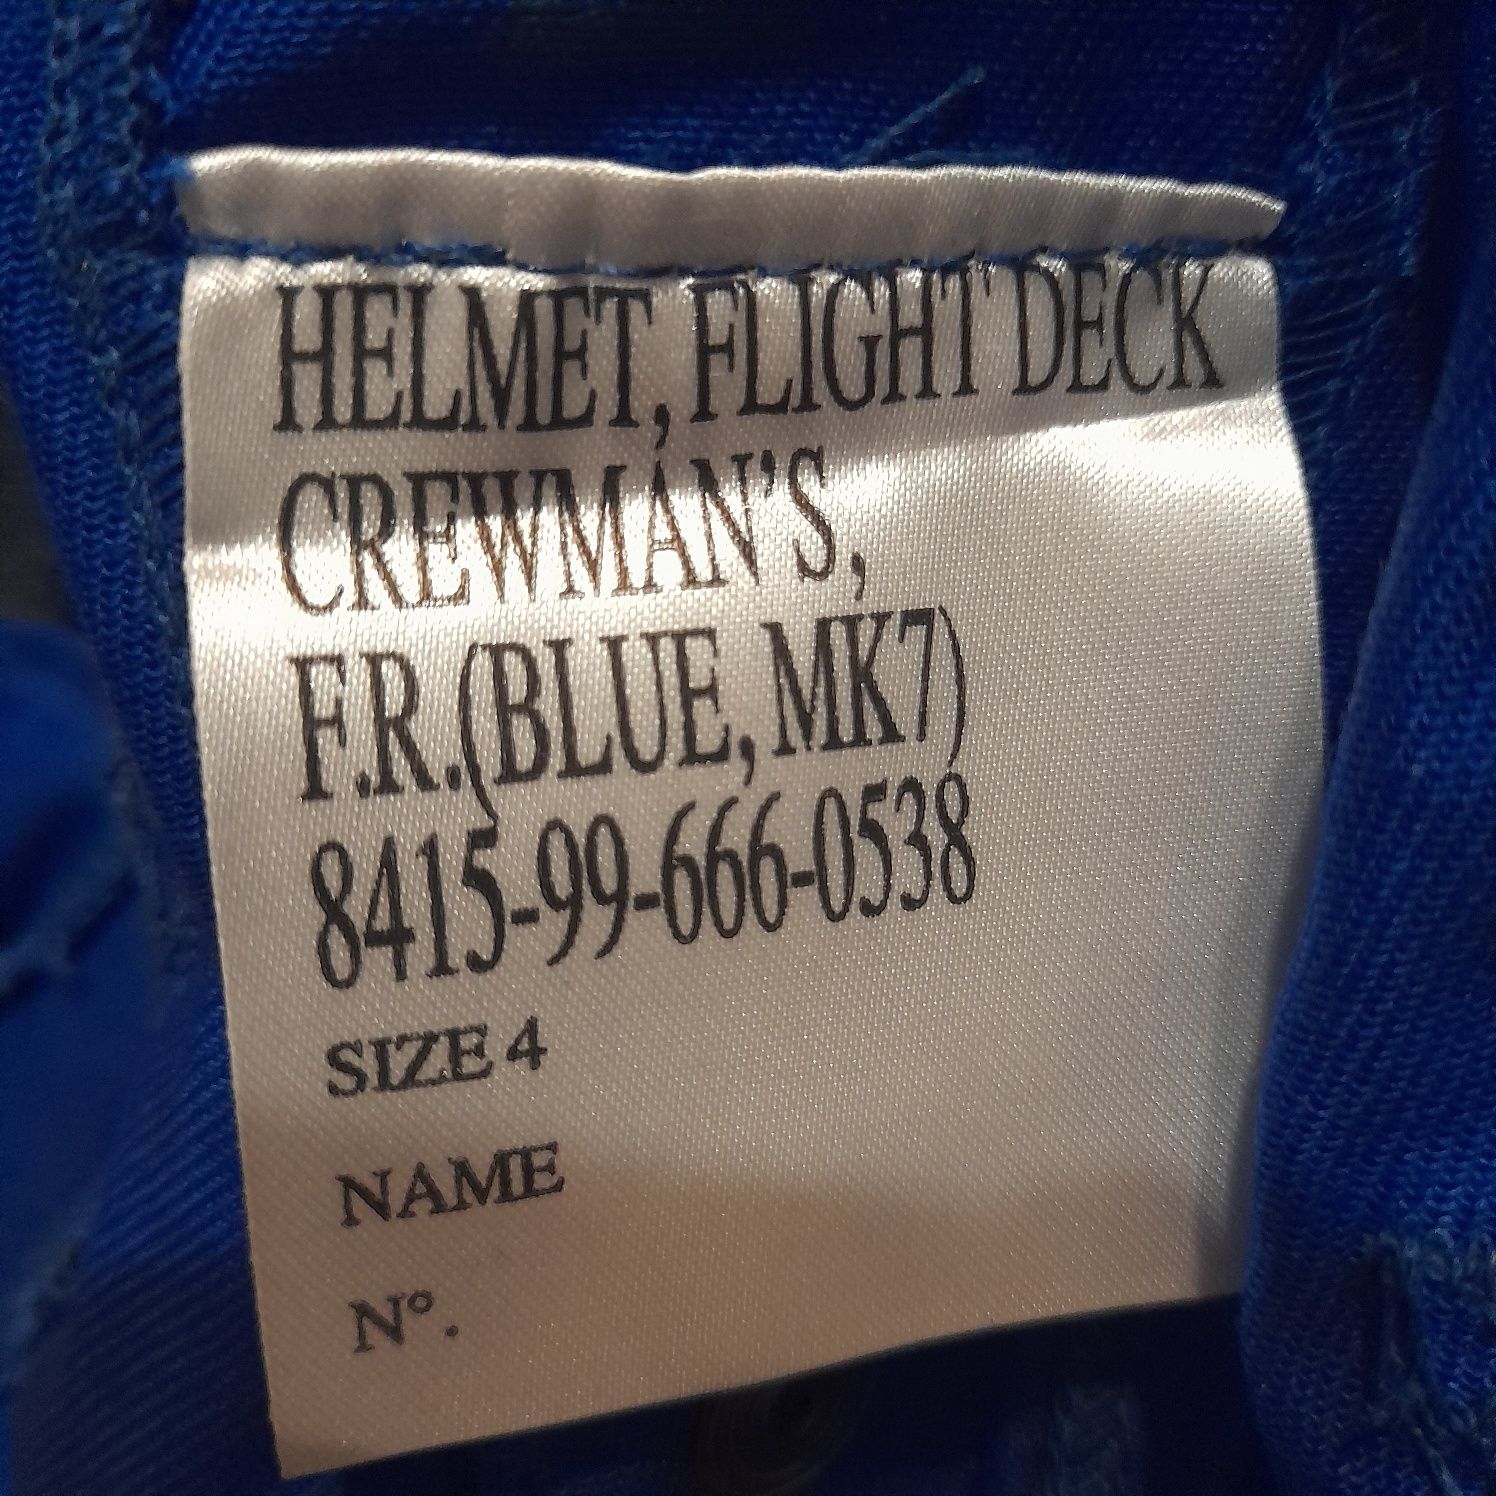 Helmets Flight Deck Crewmans MK7.